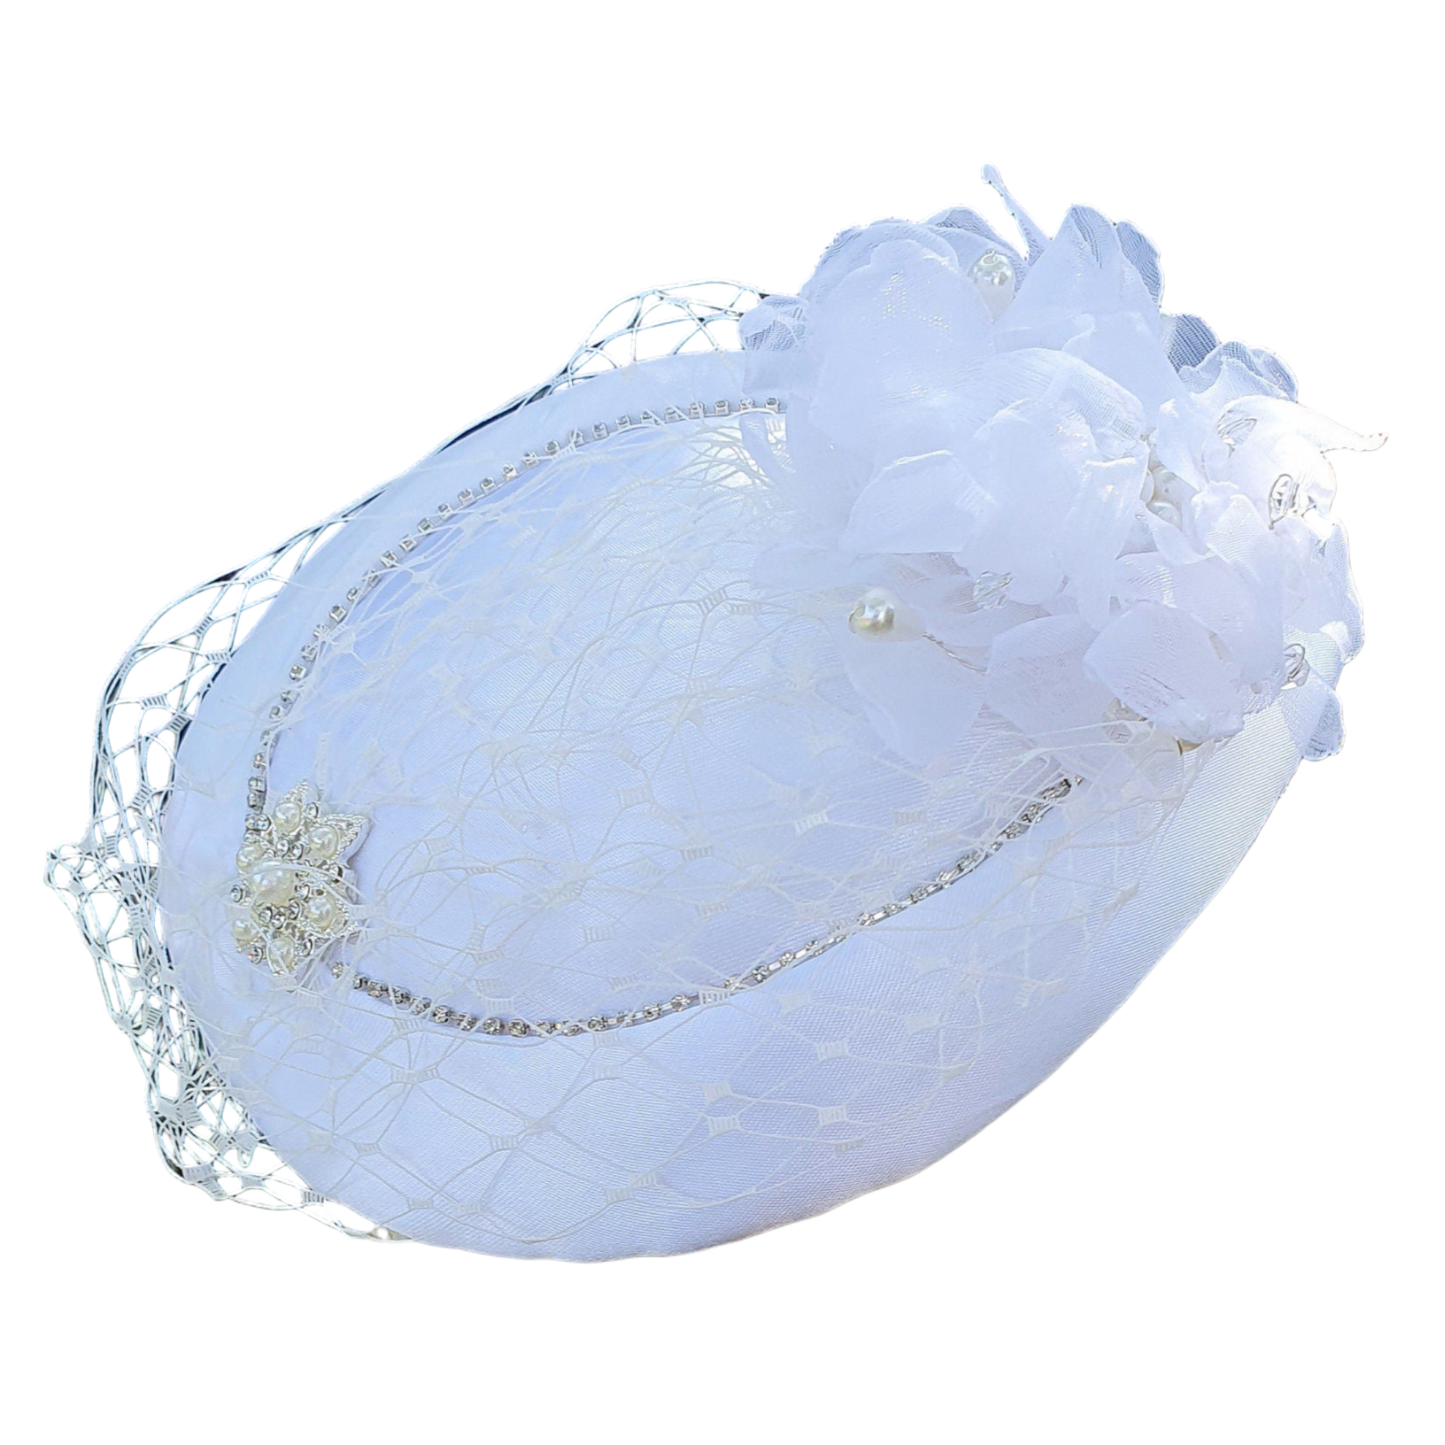 Handgemaakte ronde witte fascinator millinery van bloem  met zijde , kant  sluier, satijnen stof, parels,   broche met parels en steentjes